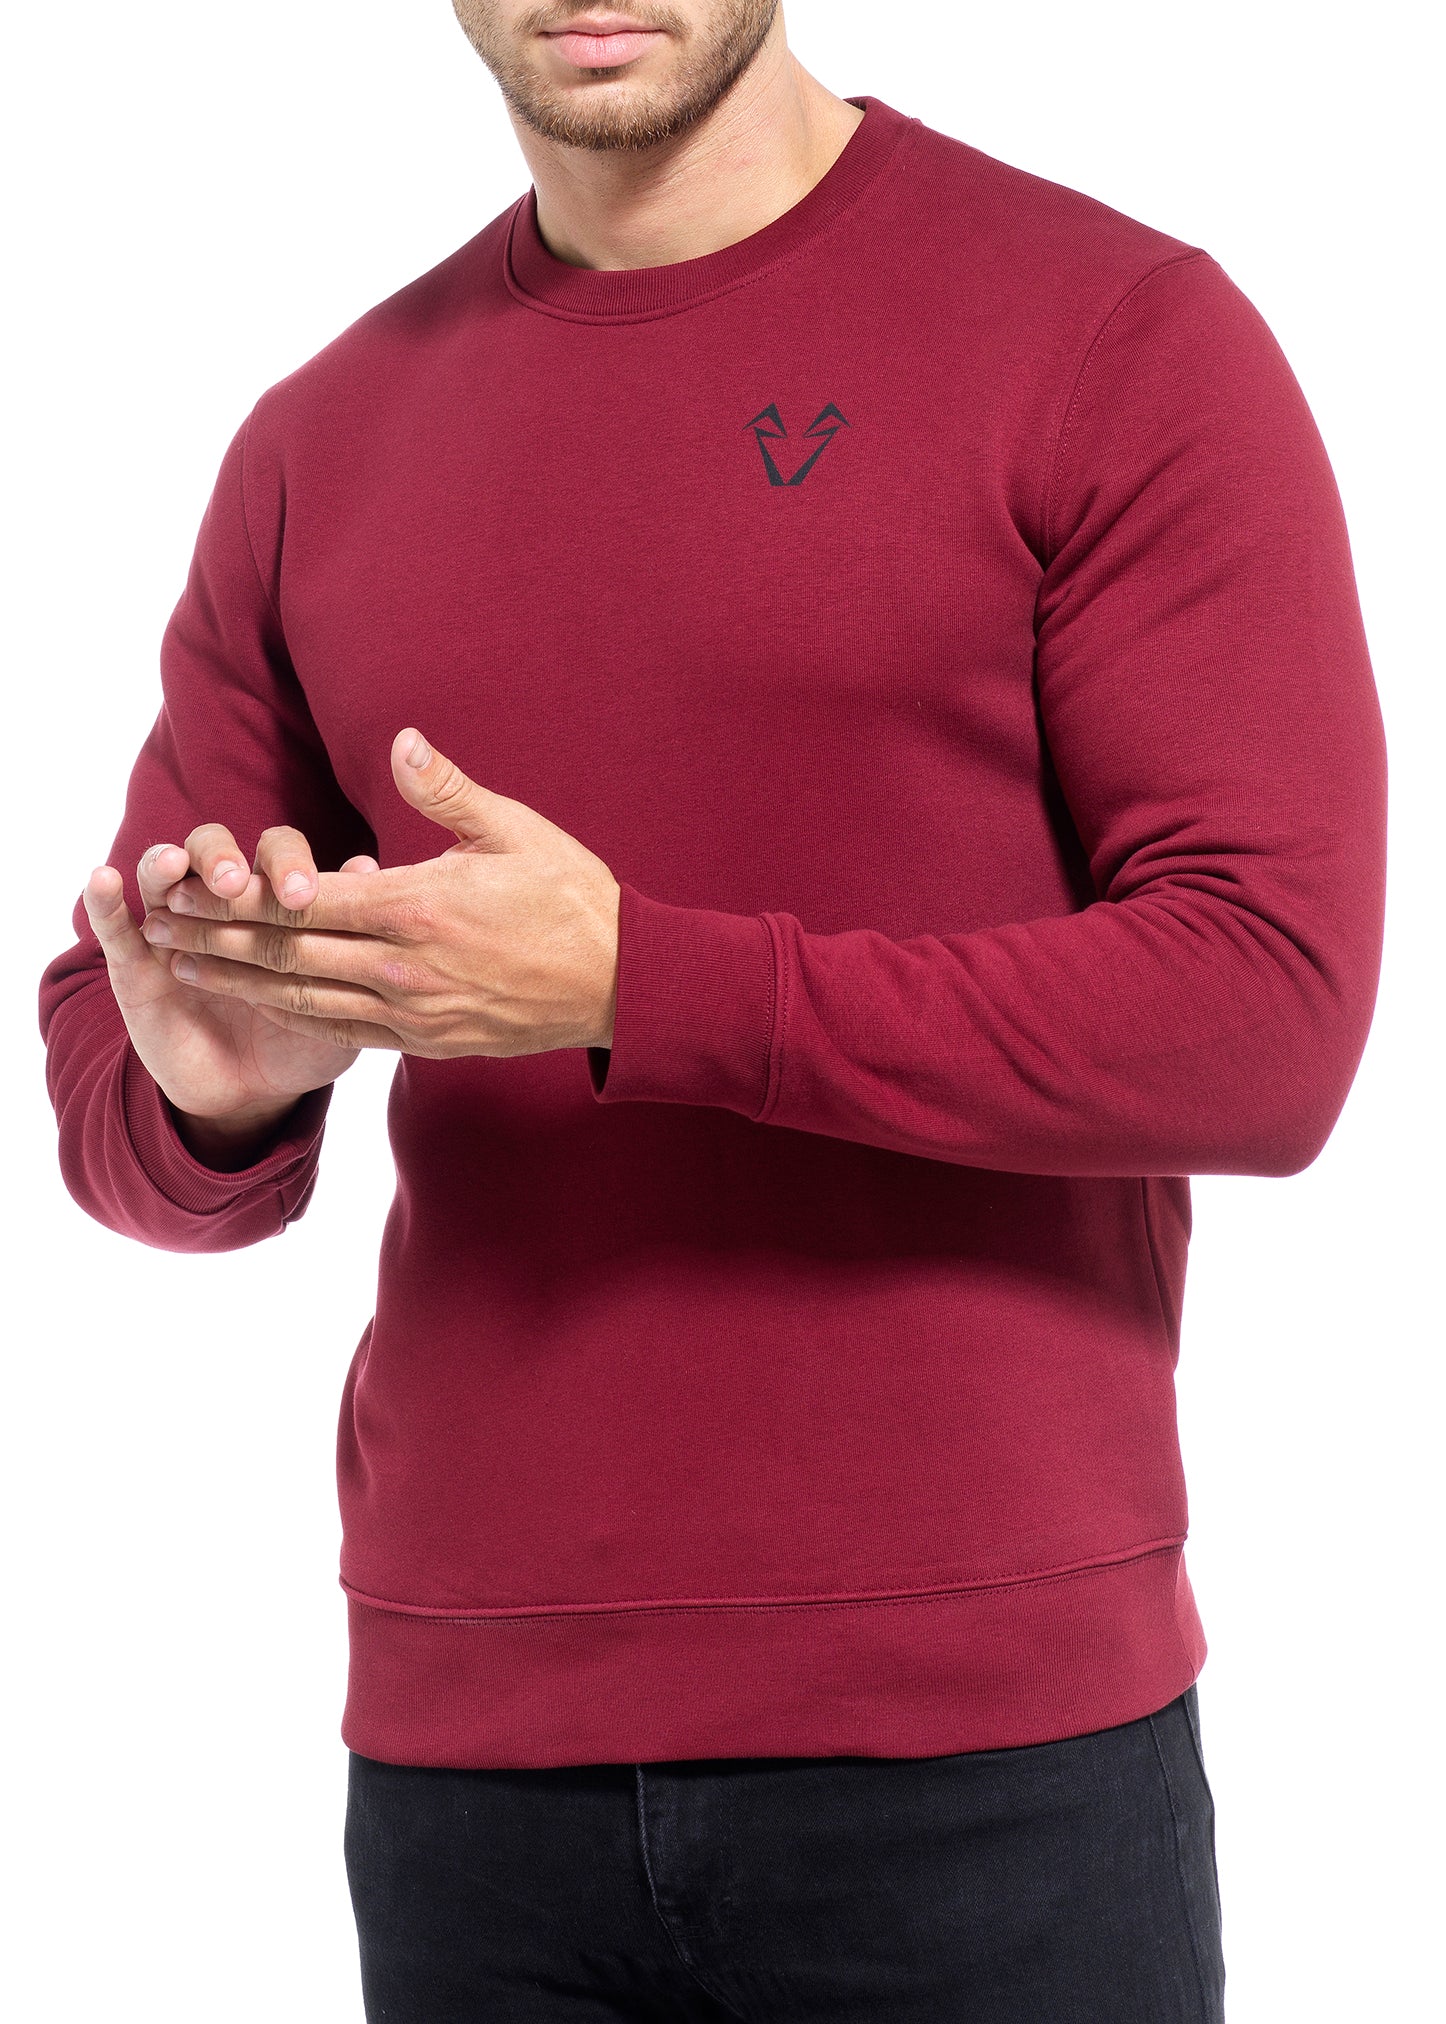 Mens Muscle Fit Sweatshirts in Burgundy